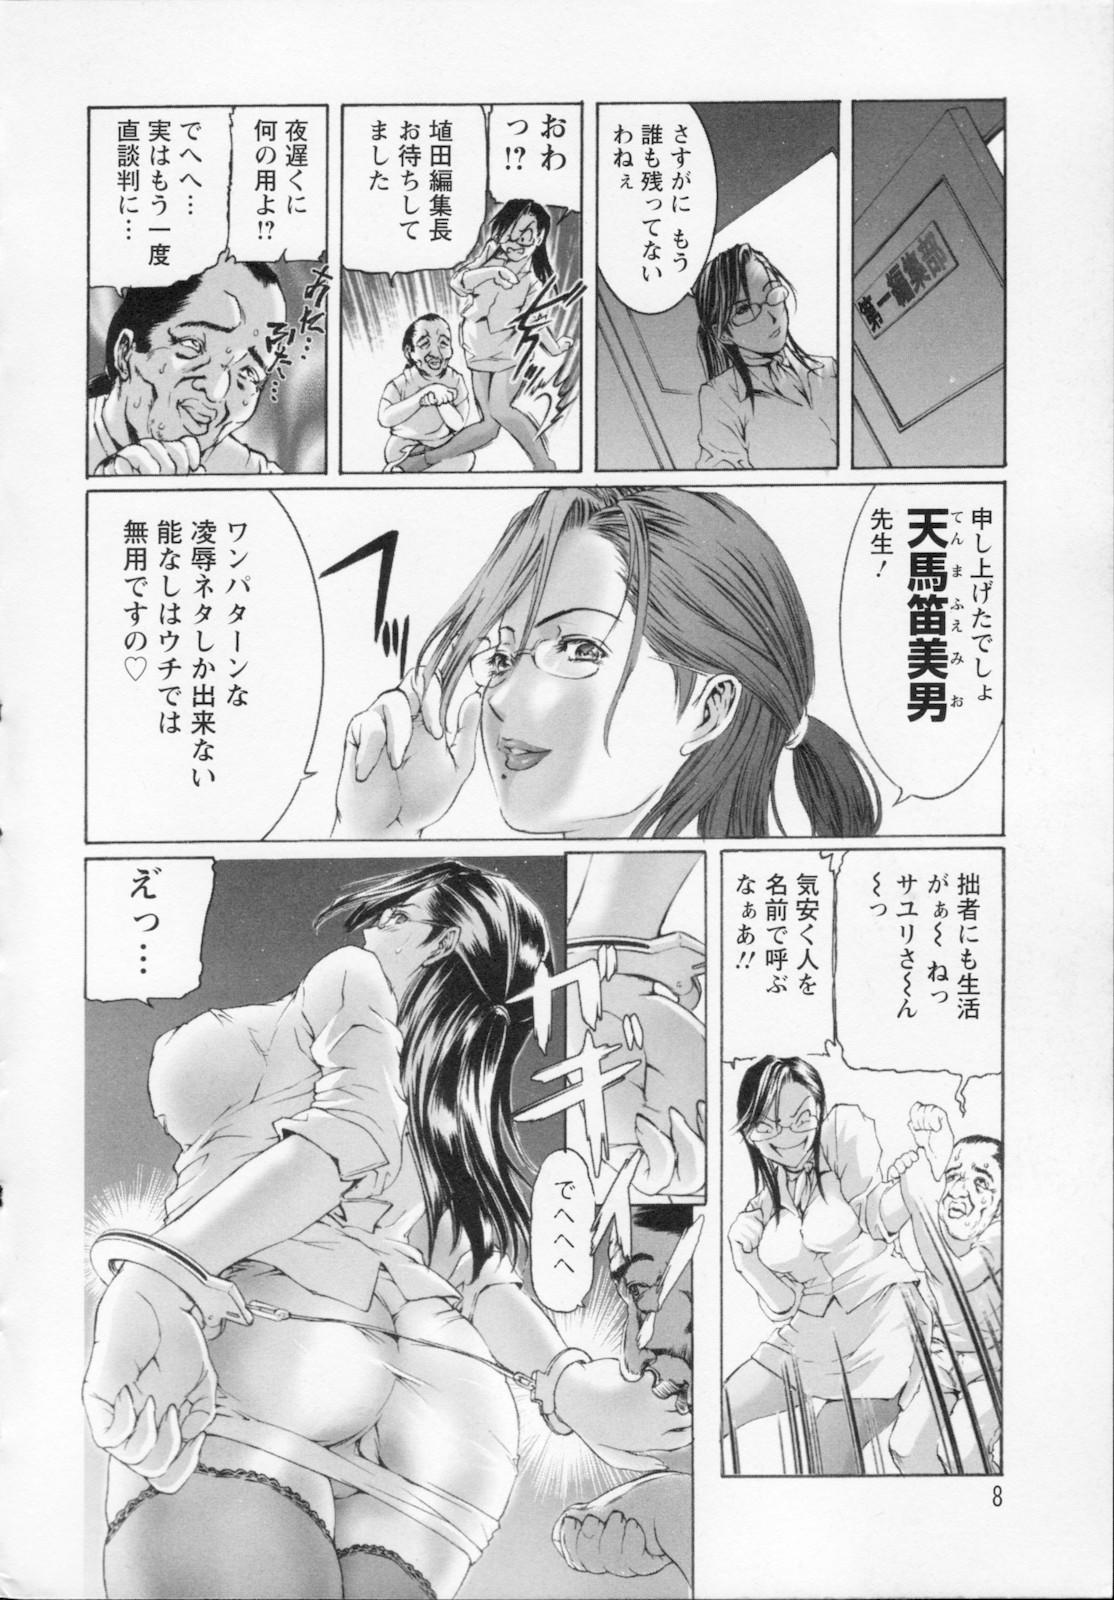 Watashi wa ryoujyoku daisuki na henatai mangaka desu 9